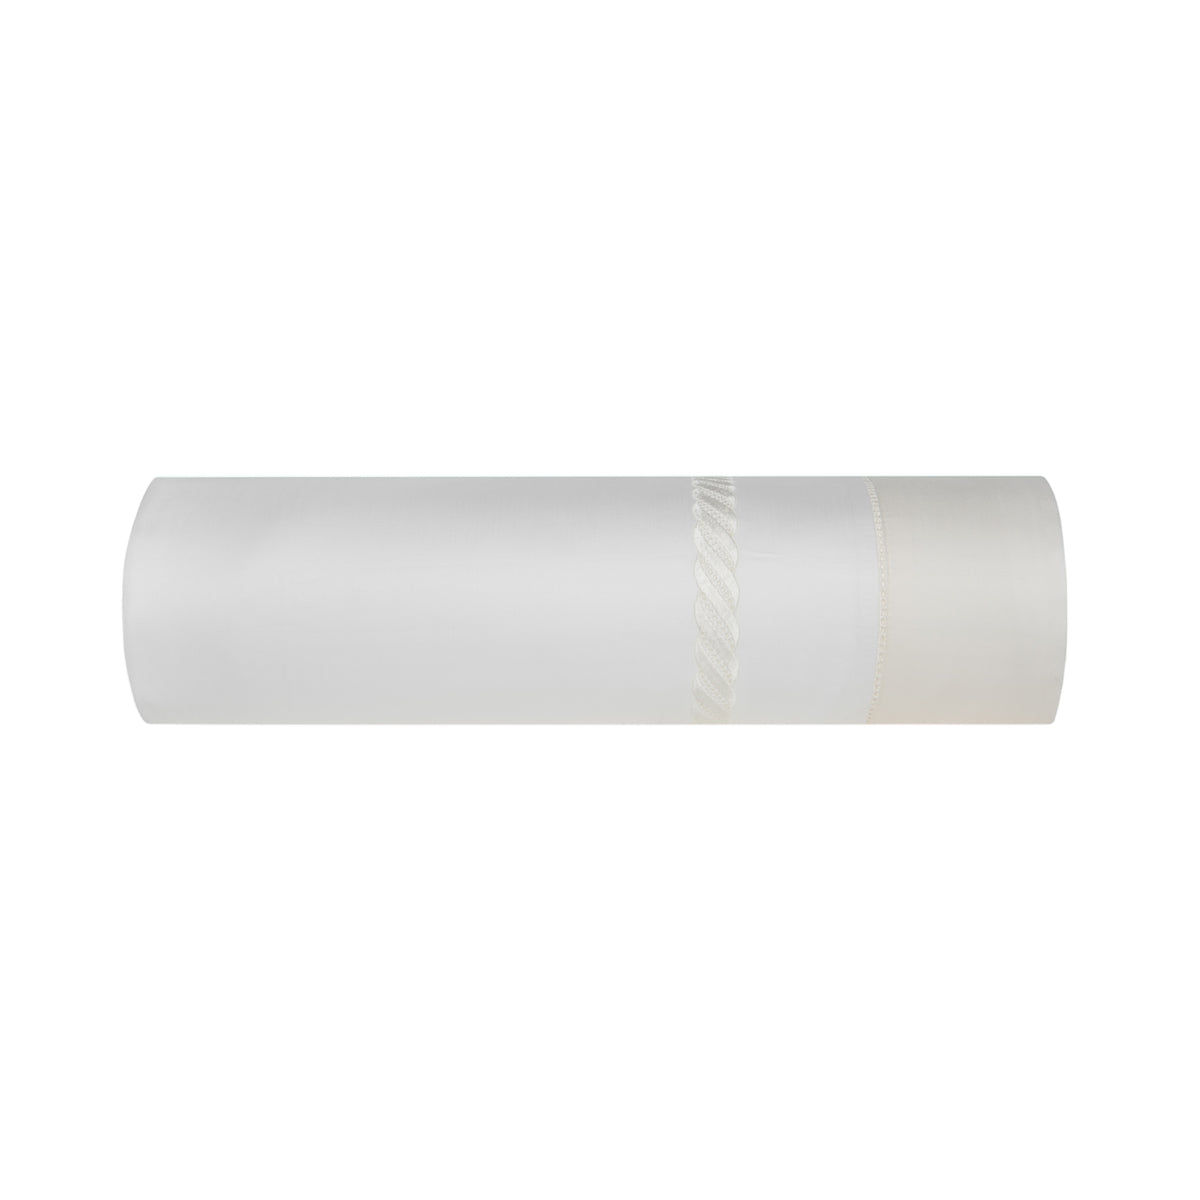 Folded Silo of BOVI Simone Bedding Flat Sheet White Ivory Colored